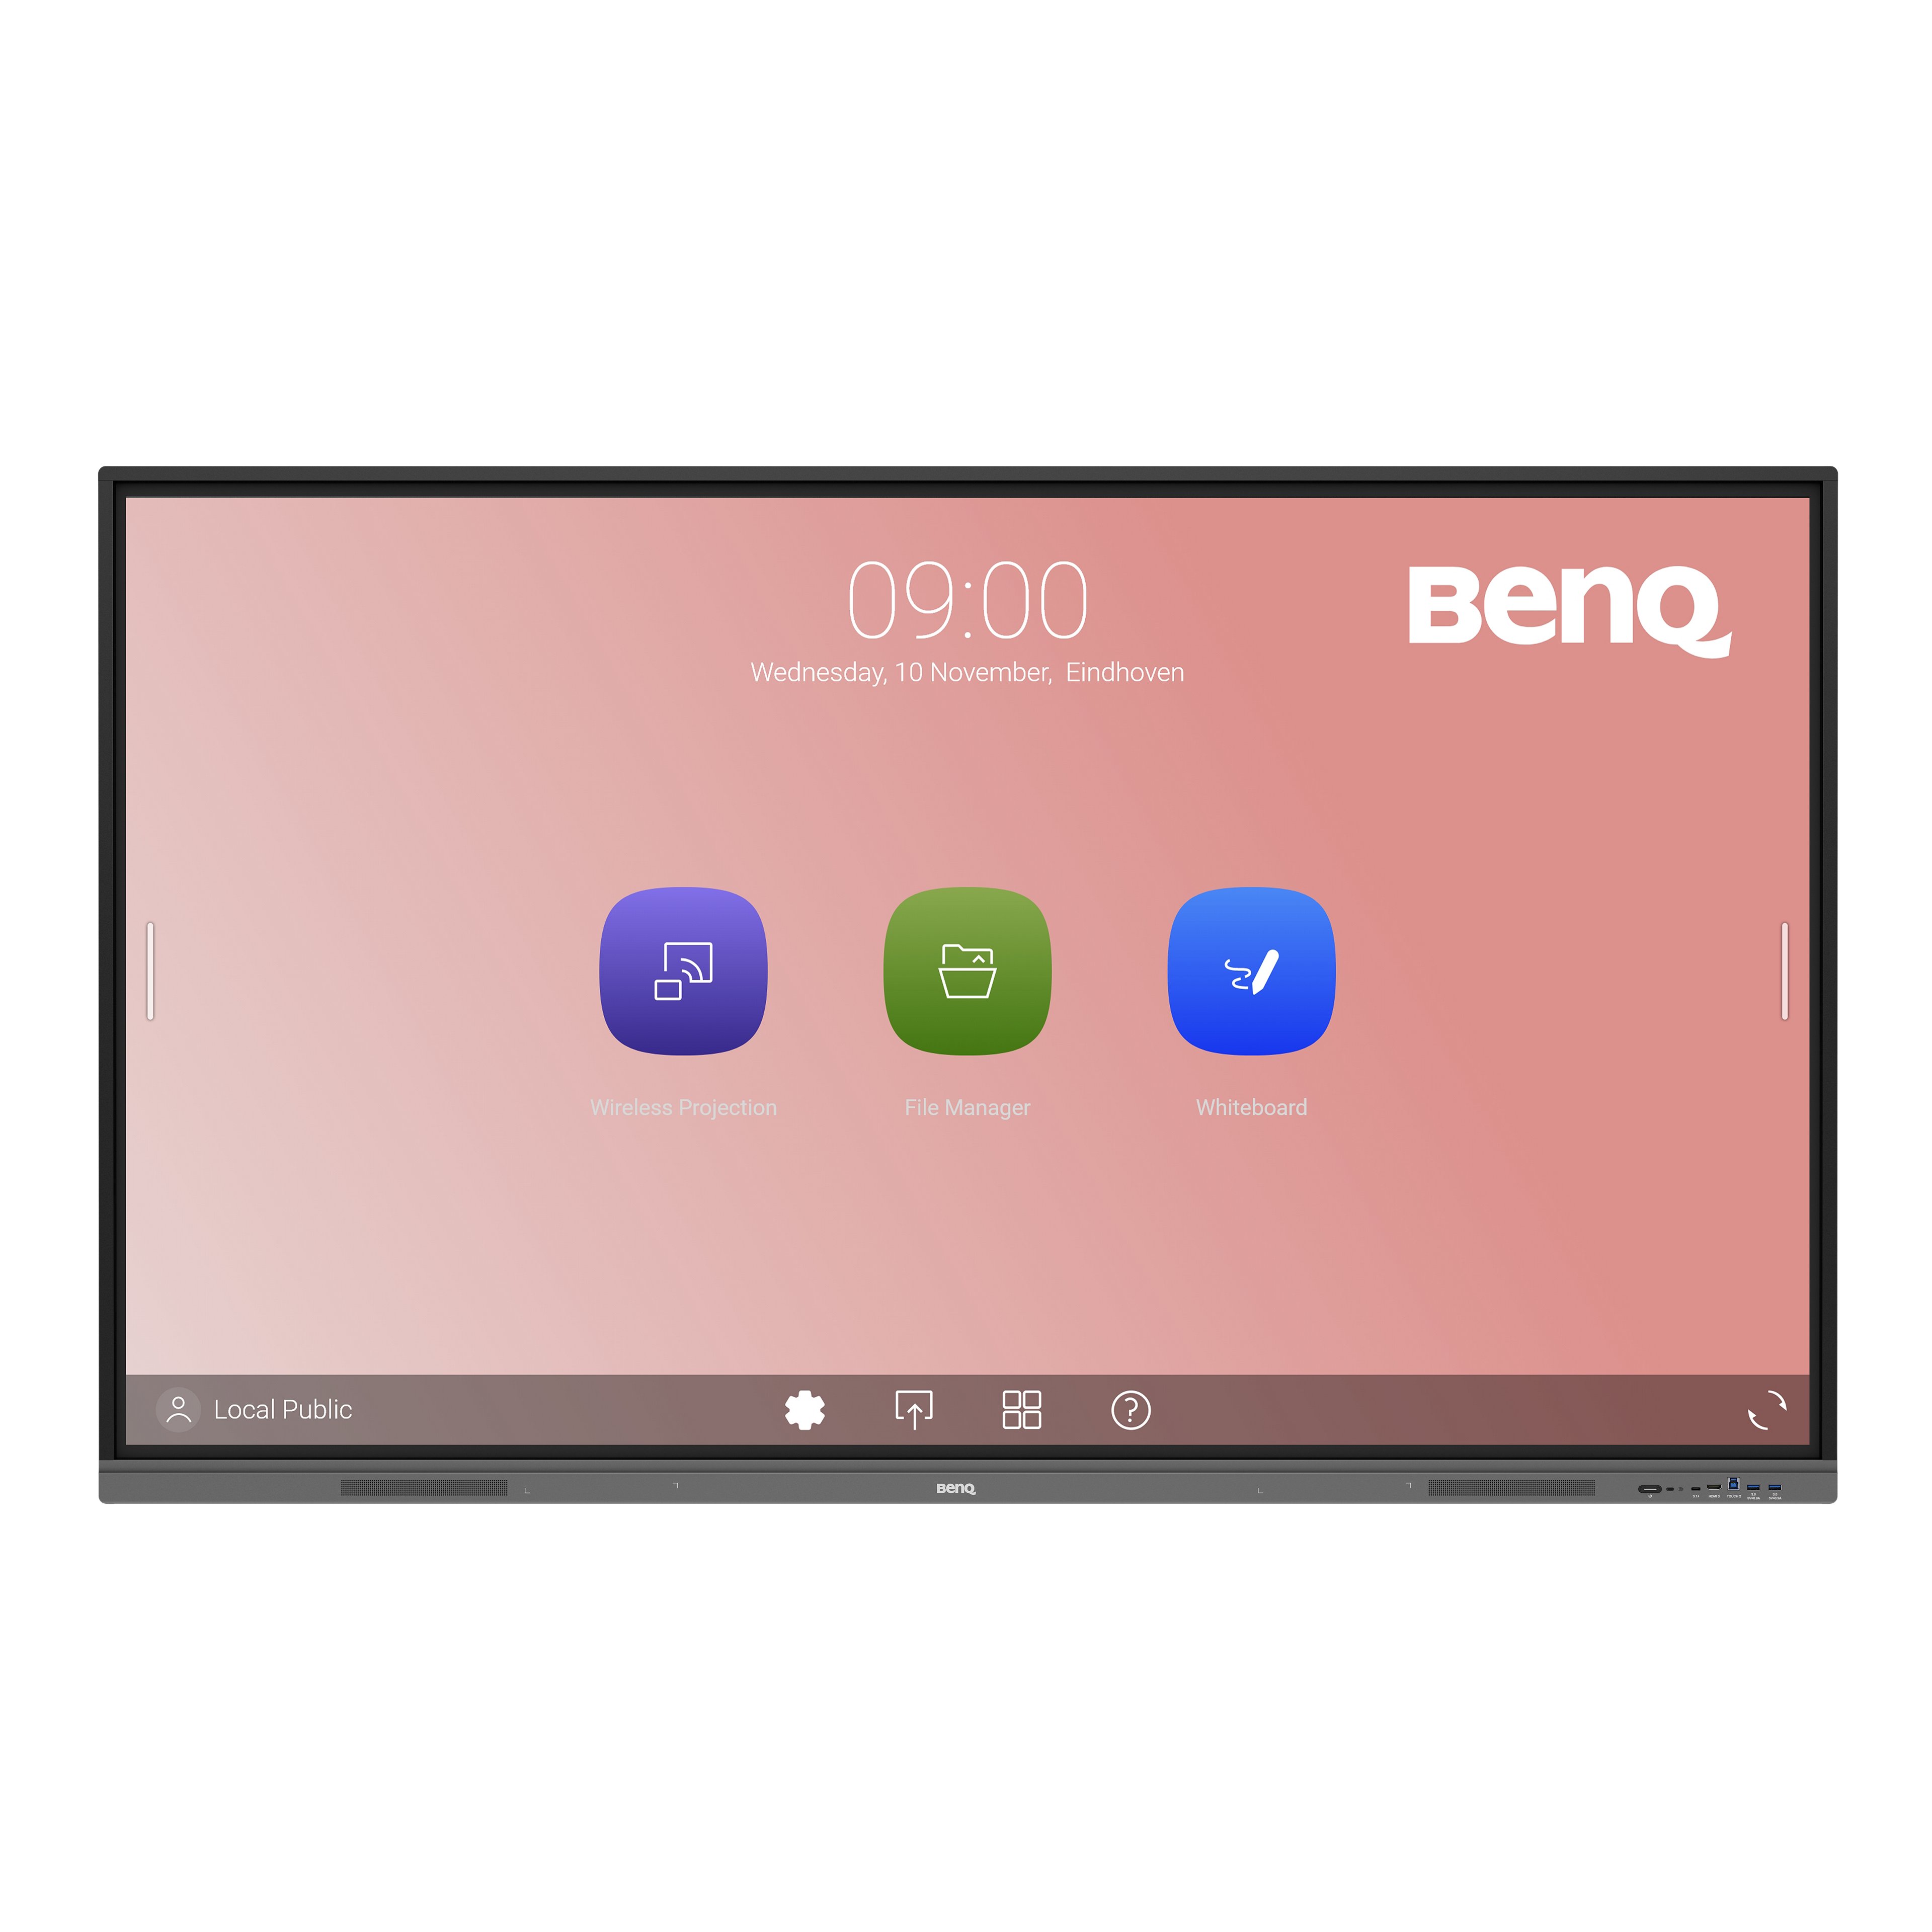 BenQ RE7503 Interaktives Display für Bildungseinrichtungen mit keimresistenten Kontaktflächen und neuesten Technologien für zeitgemäßen Remote- und Präsenzunterricht.